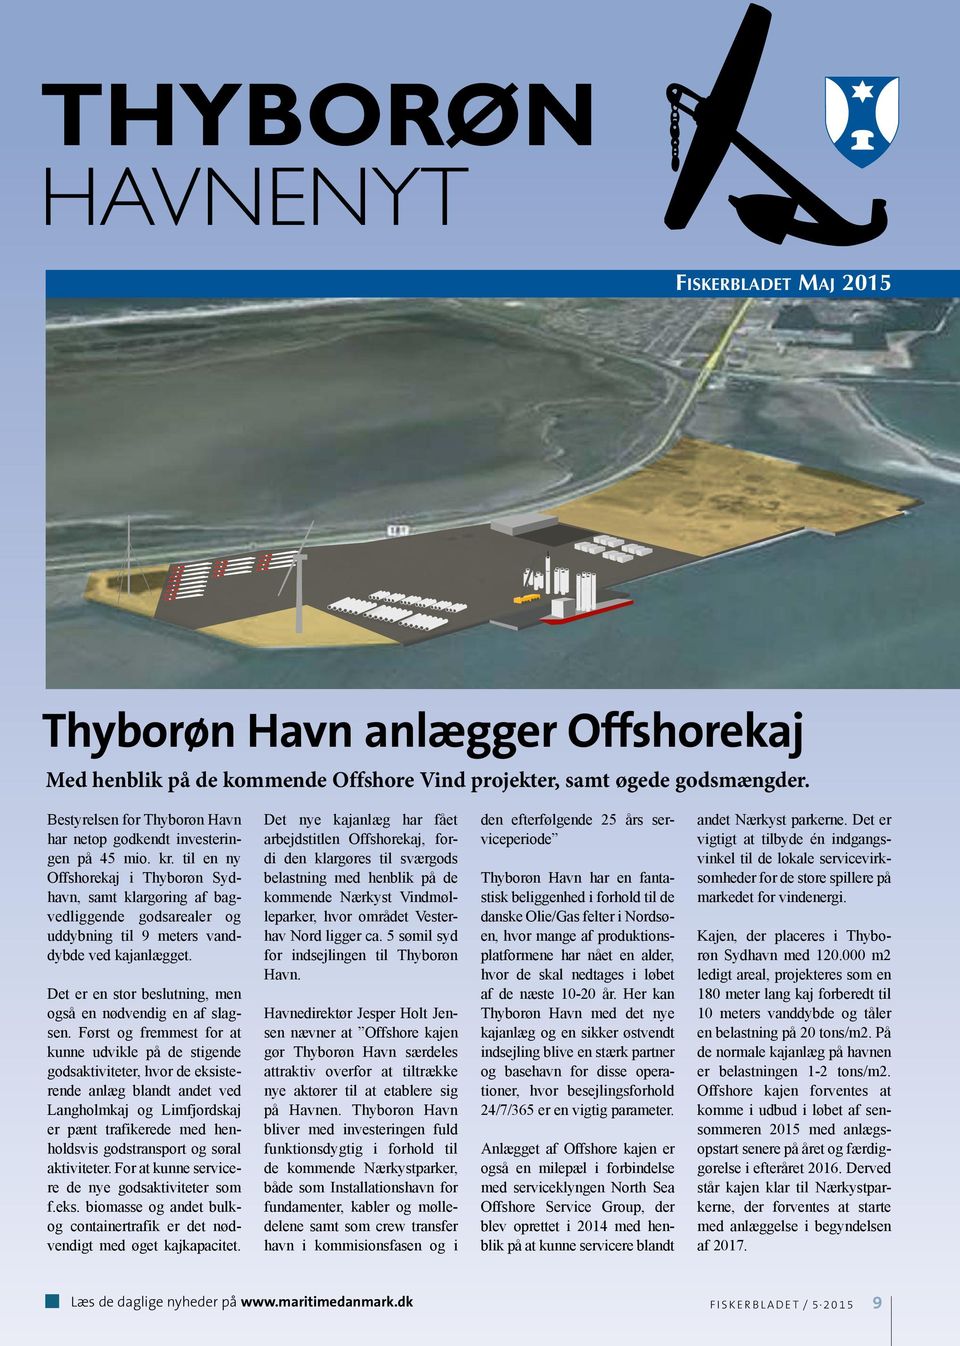 til en ny Offshorekaj i Thyborøn Sydhavn, samt klargøring af bagvedliggende godsarealer og uddybning til 9 meters vanddybde ved kajanlægget.